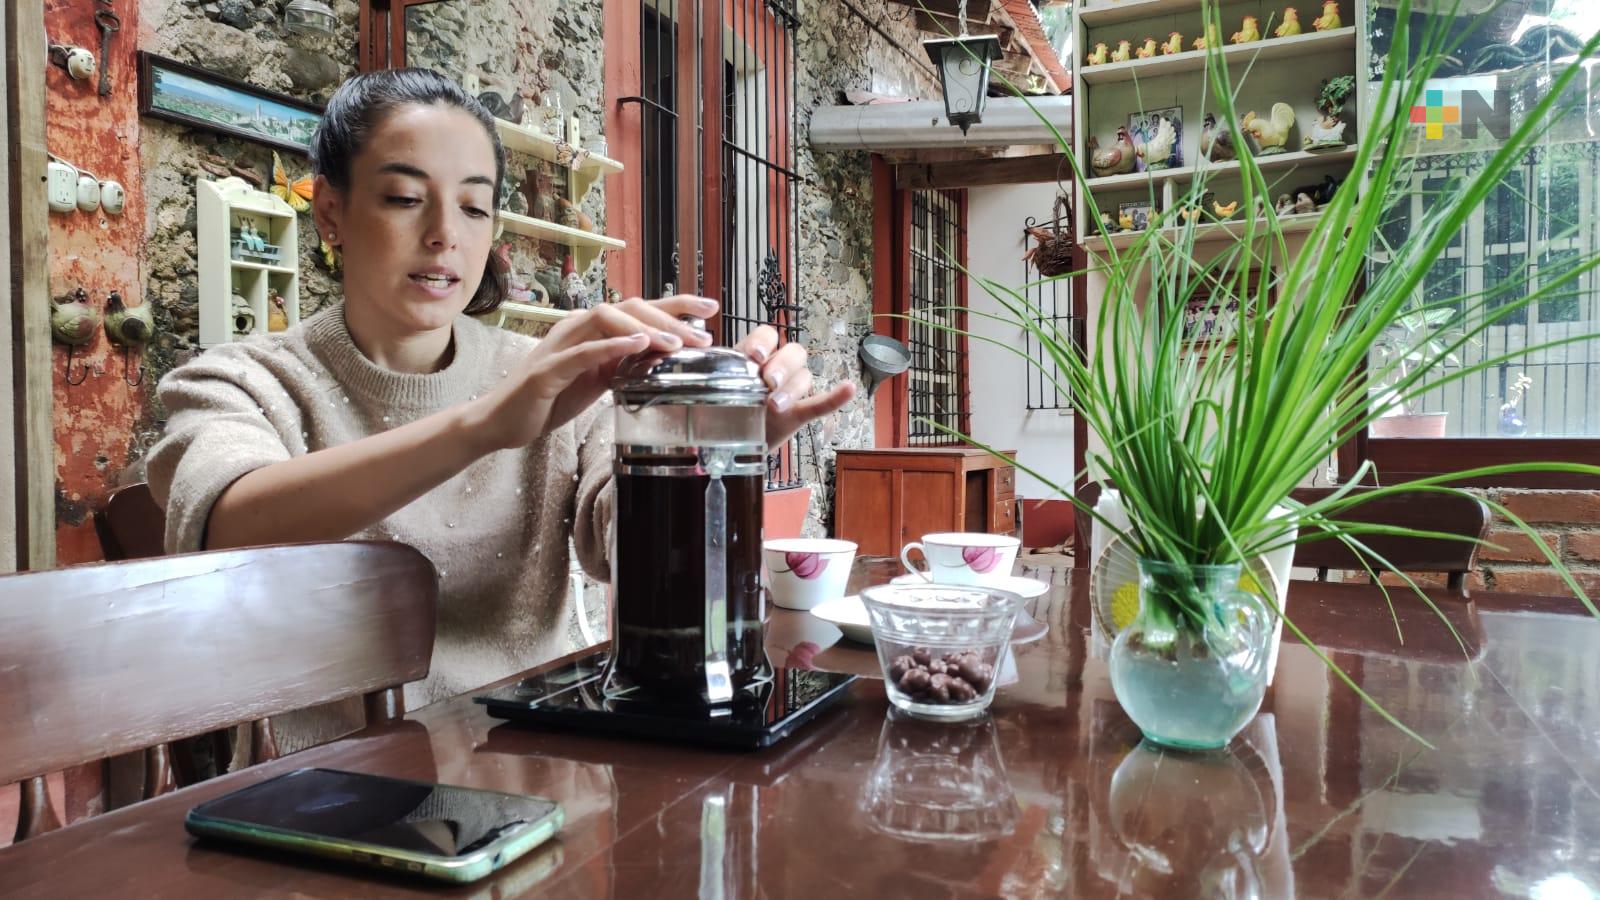 Como Pueblo Mágico, más personas se interesarán en conocer el café de Córdoba